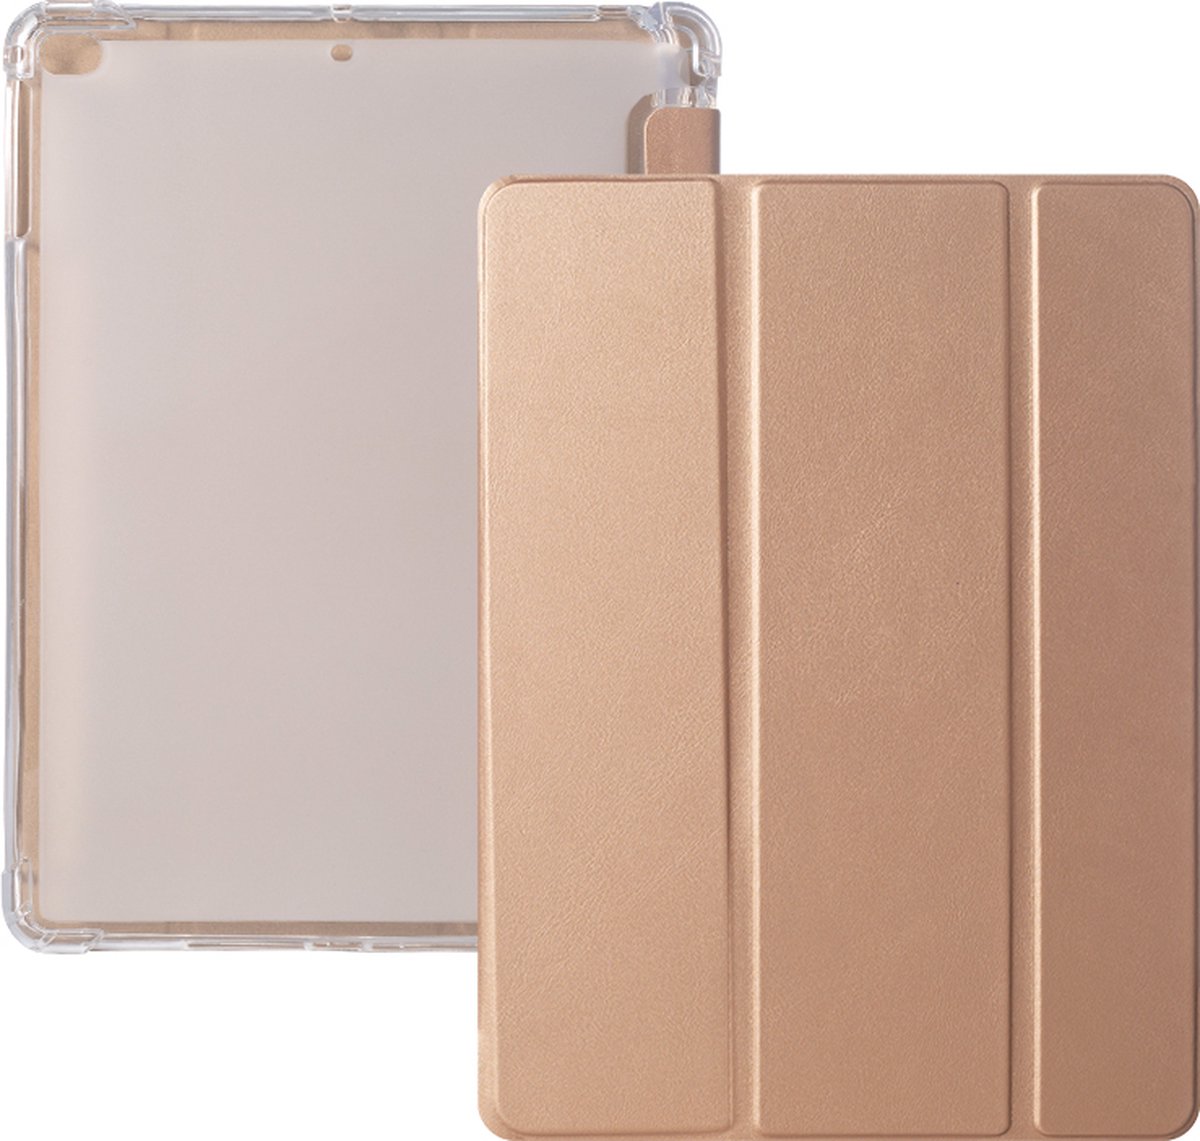 iPad 2021 Hoes - iPad 10.2 2019/2020/2021 Case - iPad 10.2 Hoesje Goud - Clear Back Folio Cover met Apple Pencil Opbergvak - Hoesje voor iPad 10.2 7e, 8e en 9e generatie